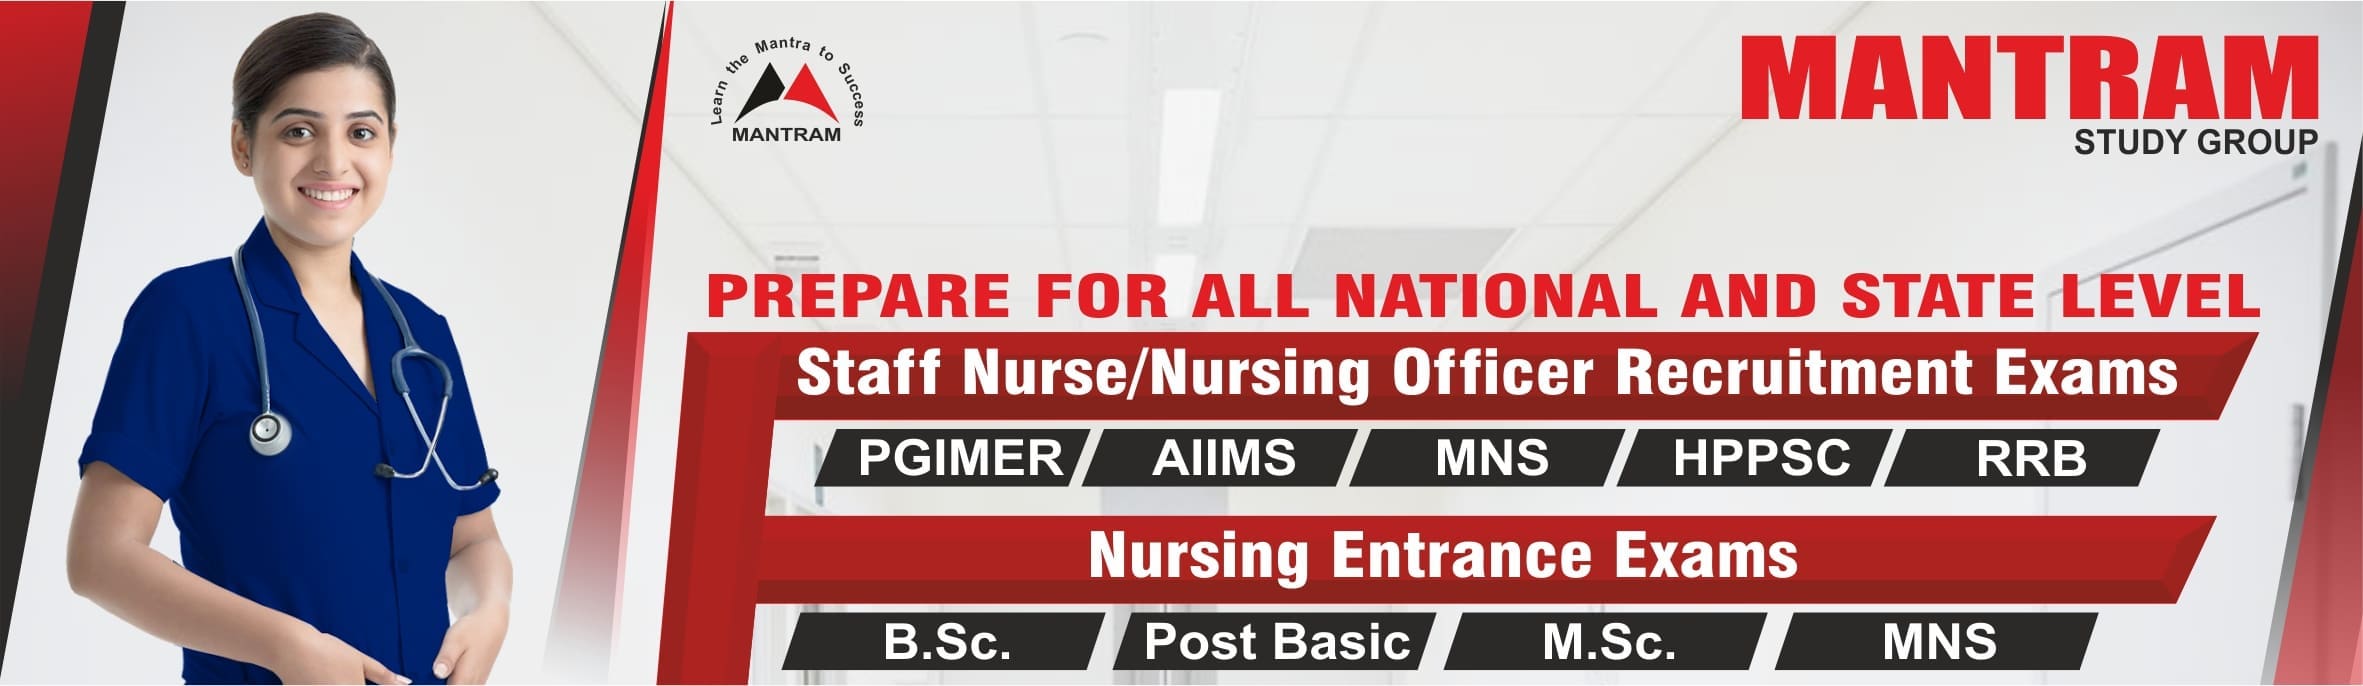 staff nurse nursing officer